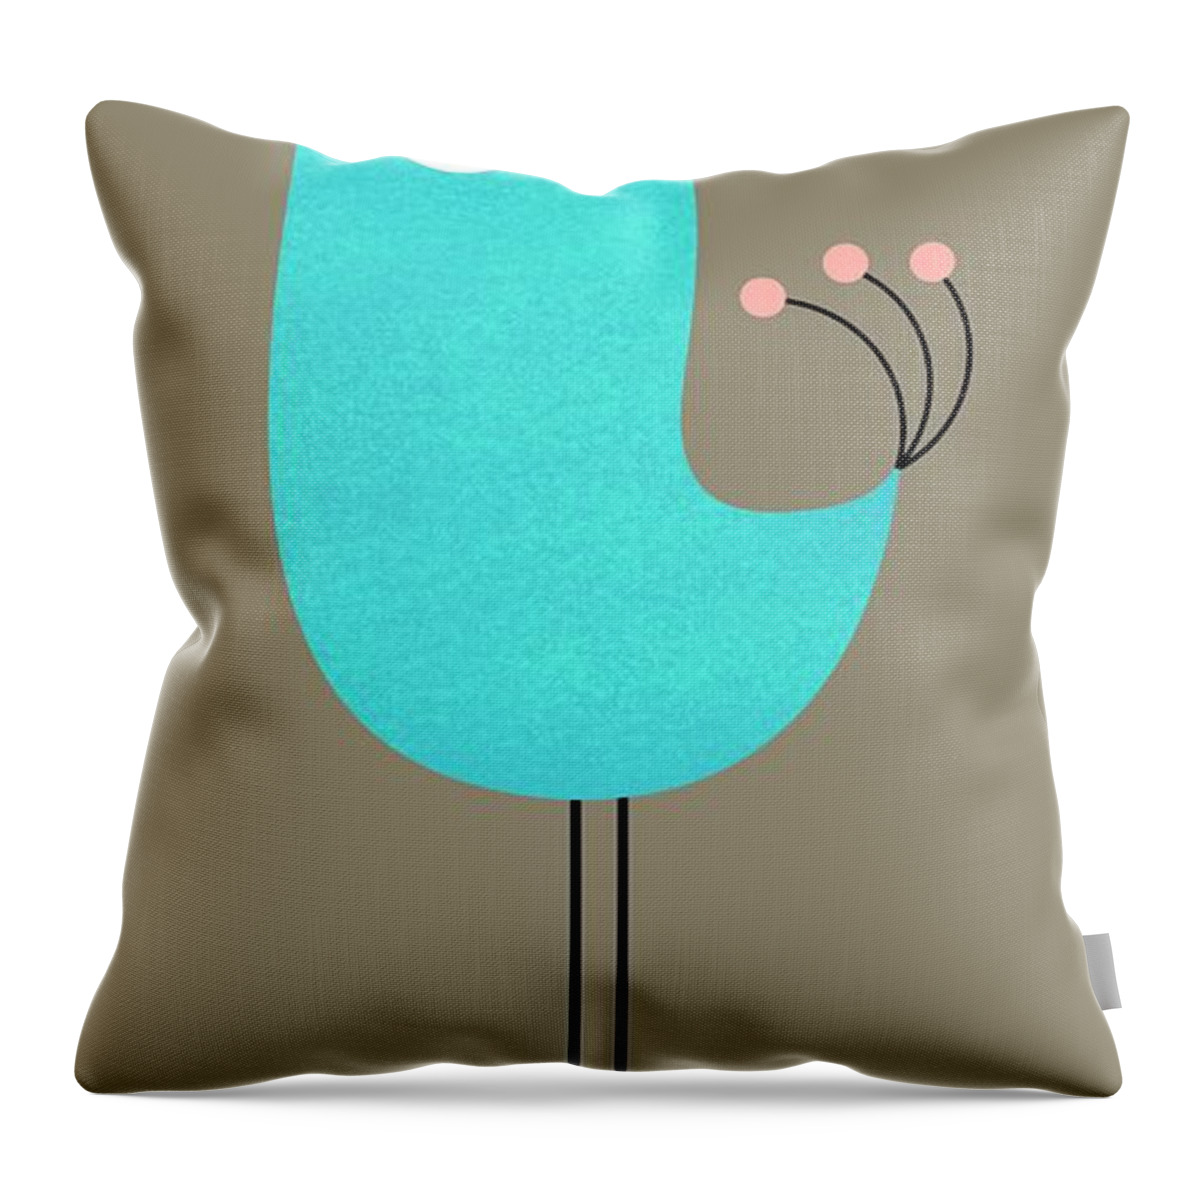 Blue Throw Pillow featuring the digital art Long Leg Bird by Donna Mibus